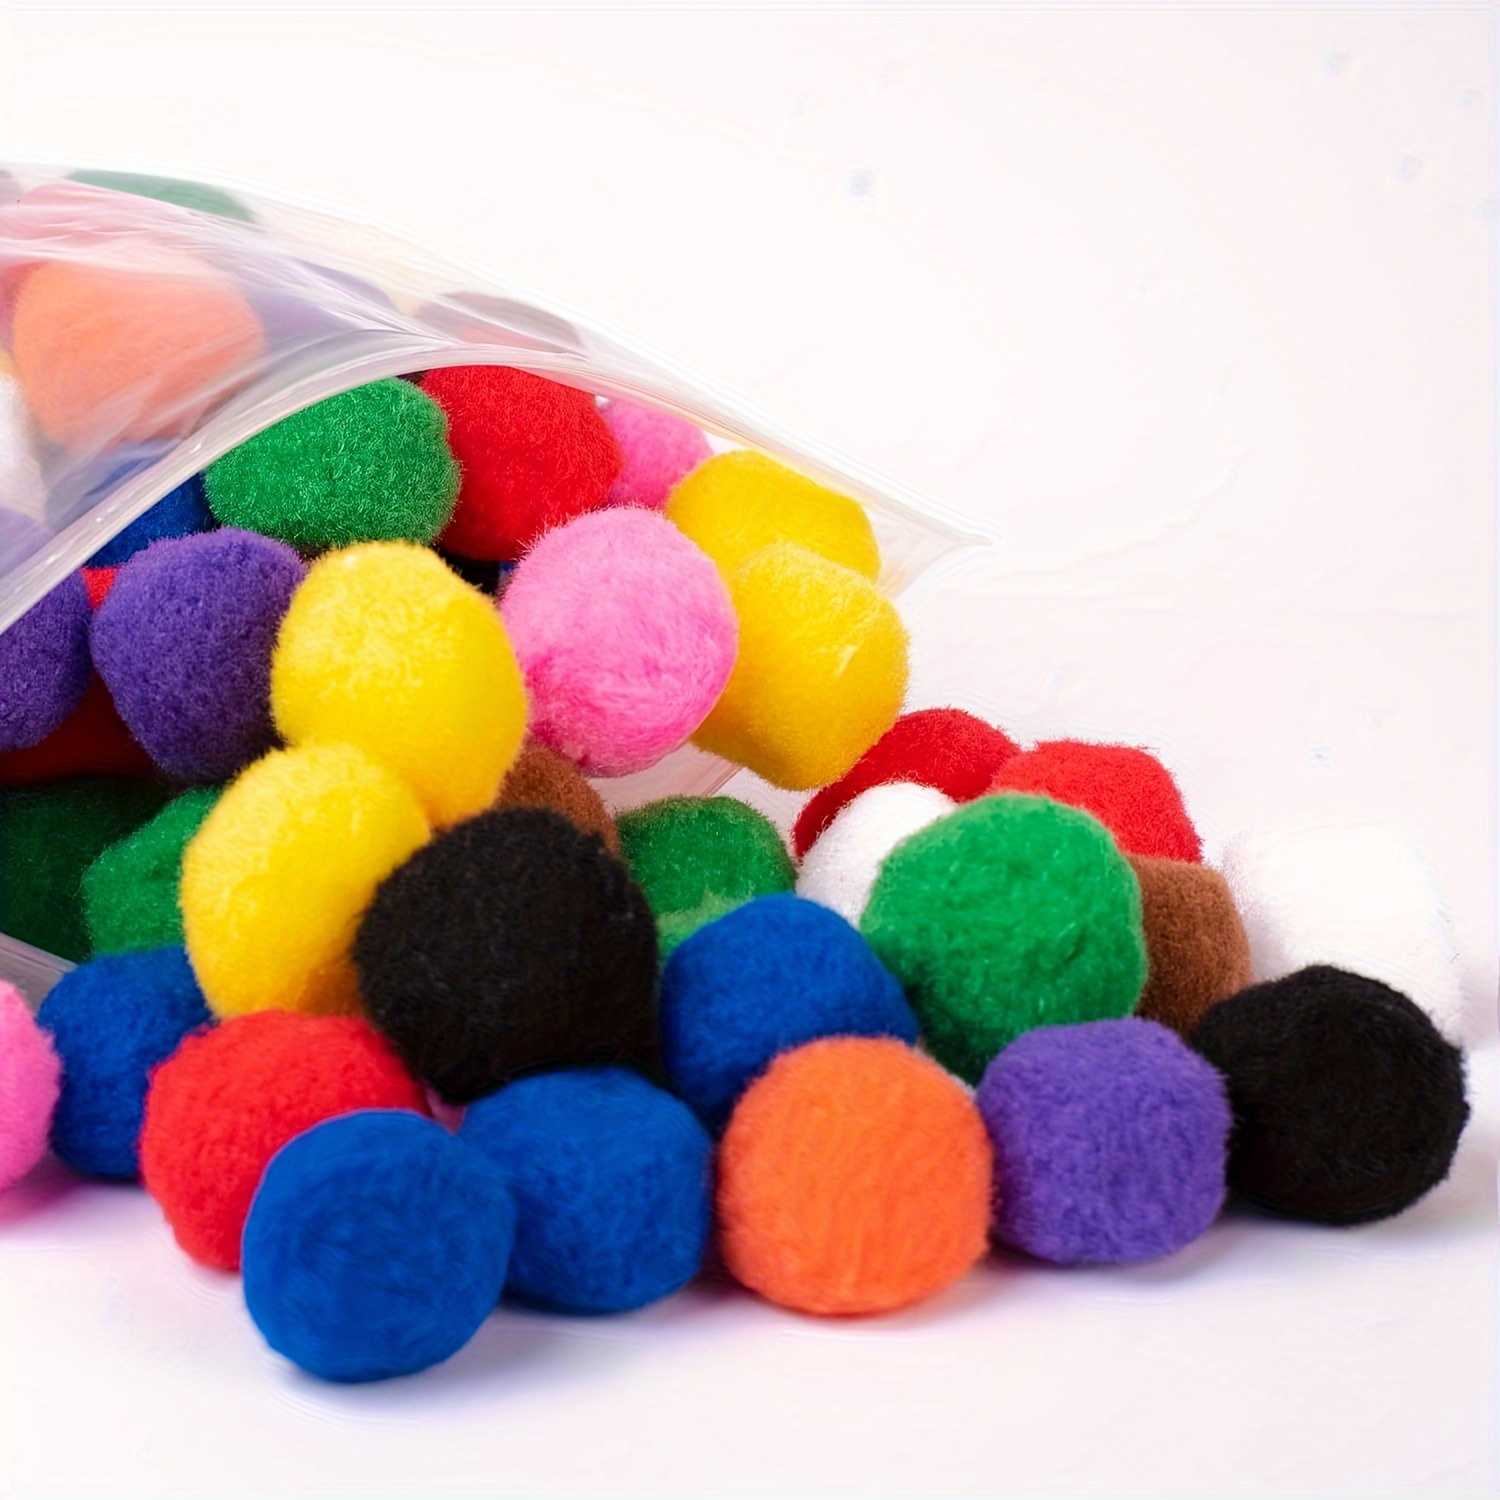 100 Pieces 2cm Assorted Pom Poms, Craft Pom Pom Balls, Colorful Pompoms for DIY Creative Crafts Decorations Craft Project (08)